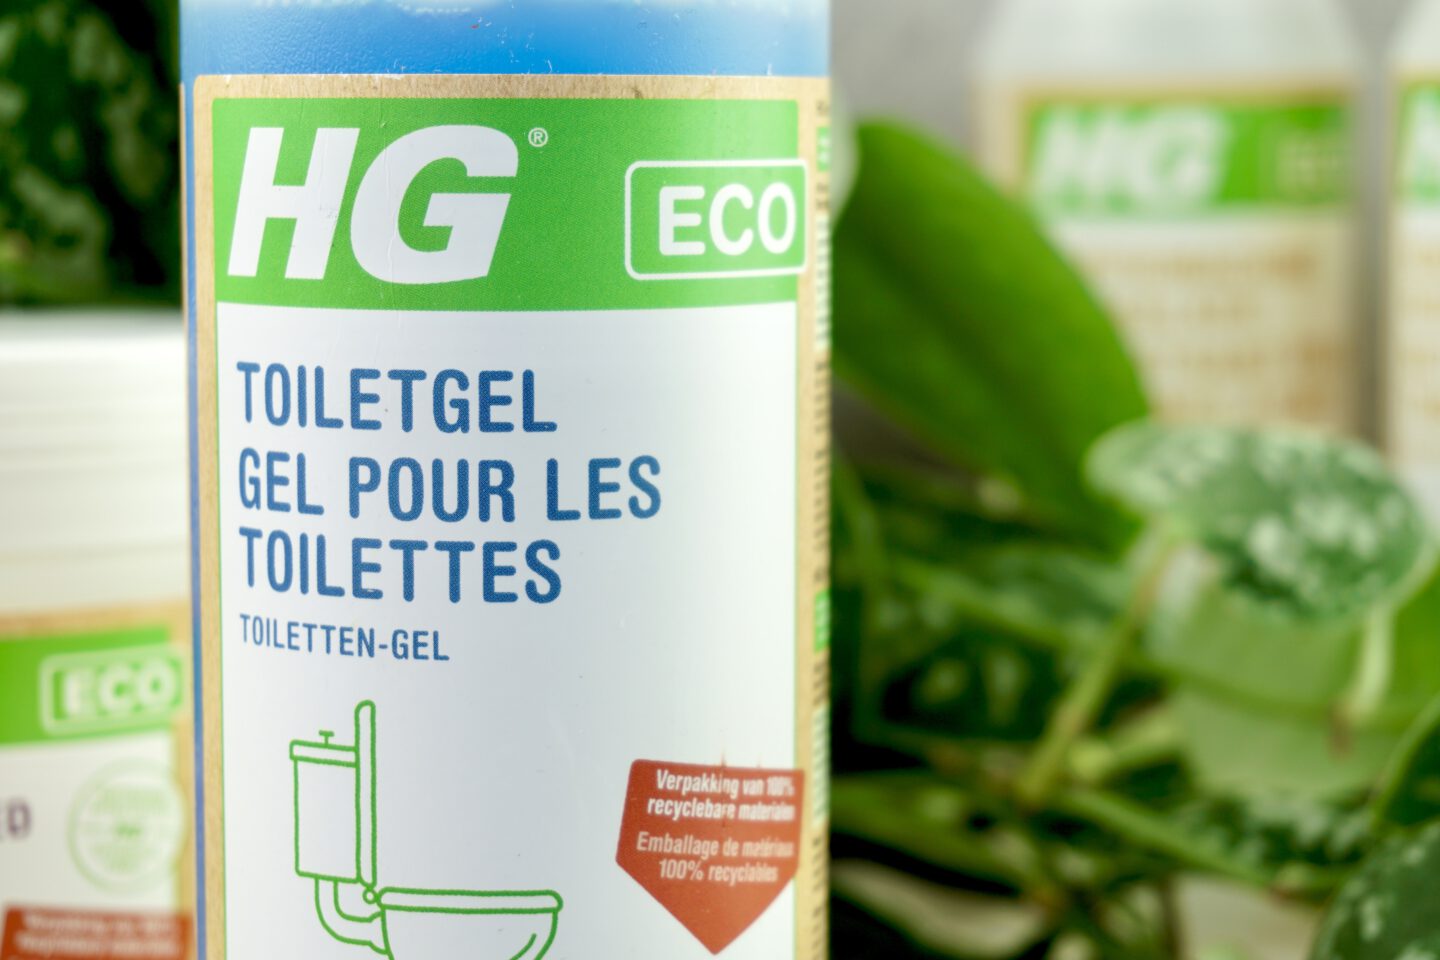 Ecologische schoonmaakmiddelen – toiletgel hg eco